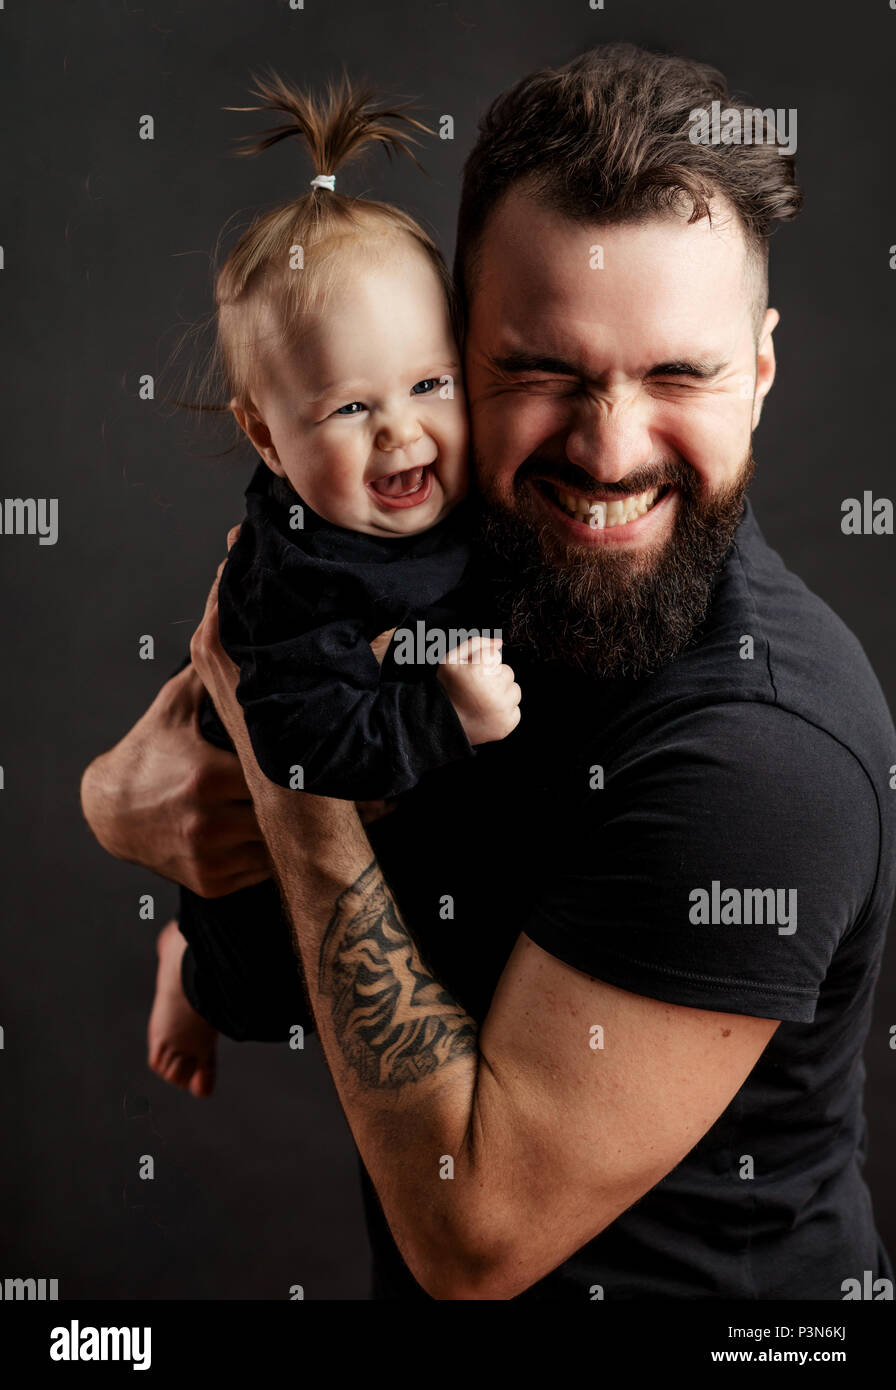 Stattliche tätowierten jungen Mann mit niedlichen kleinen Baby auf schwarzem Hintergrund Stockfoto